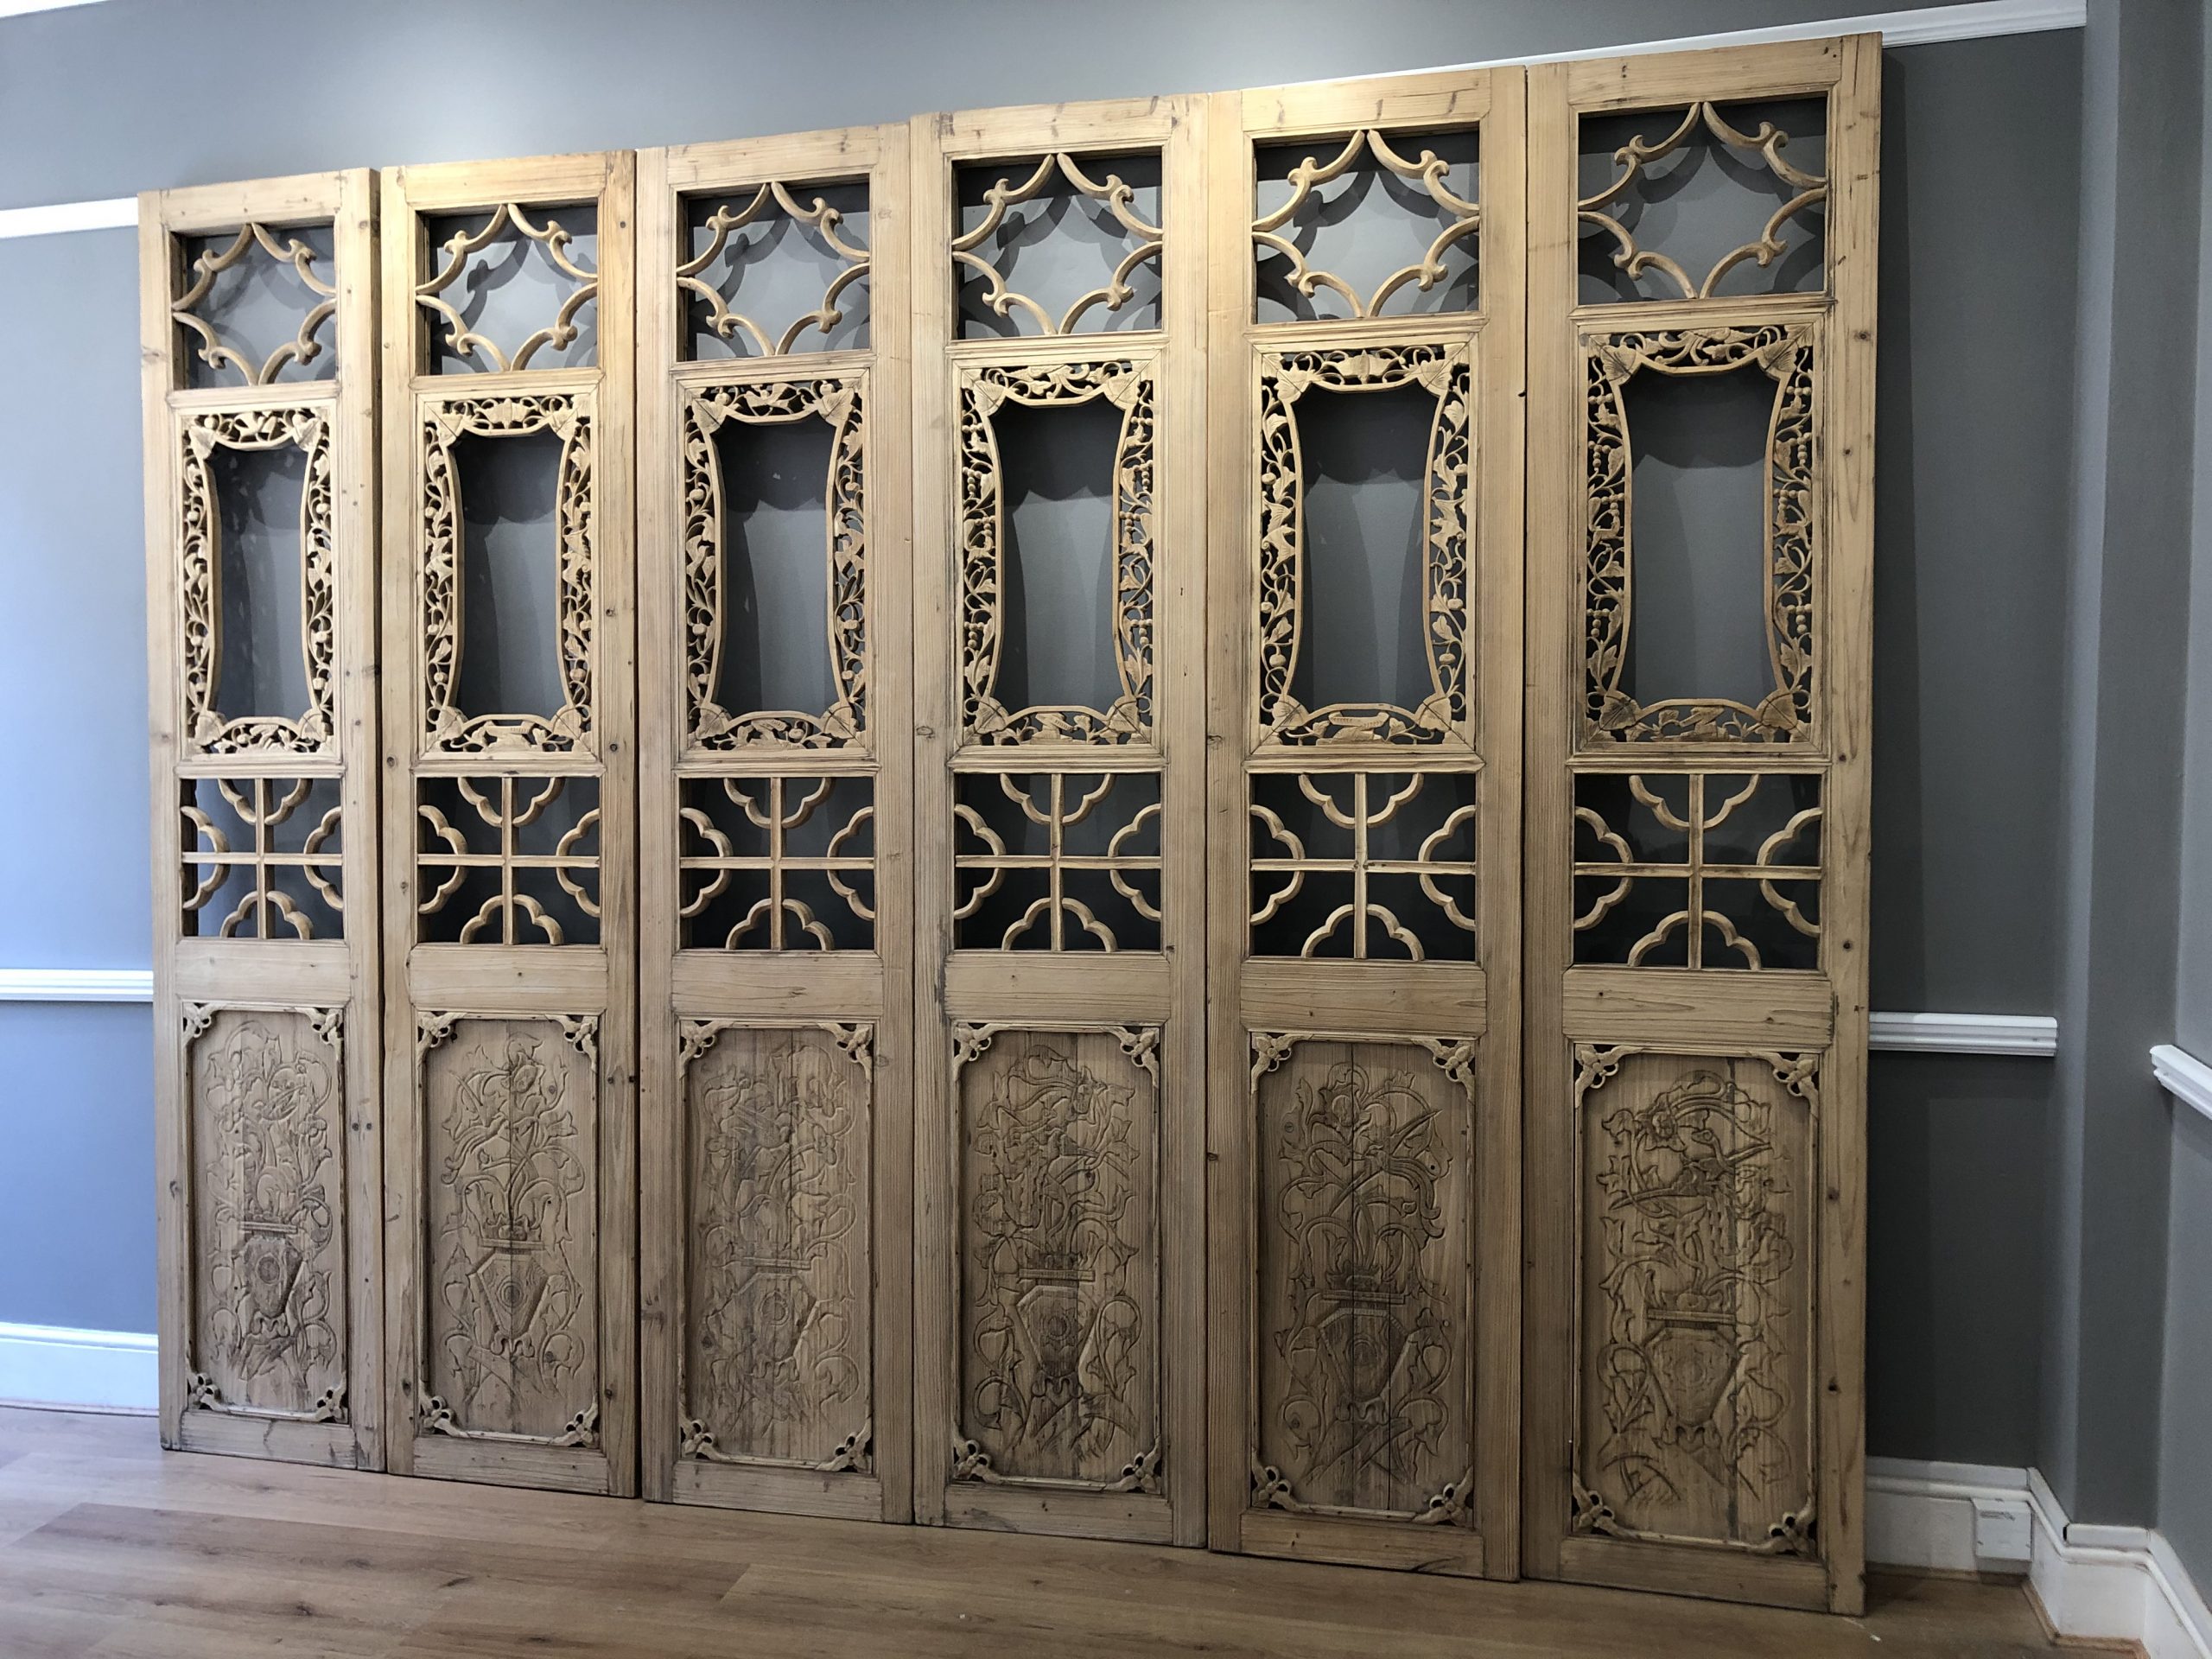 Set of 6 door panels